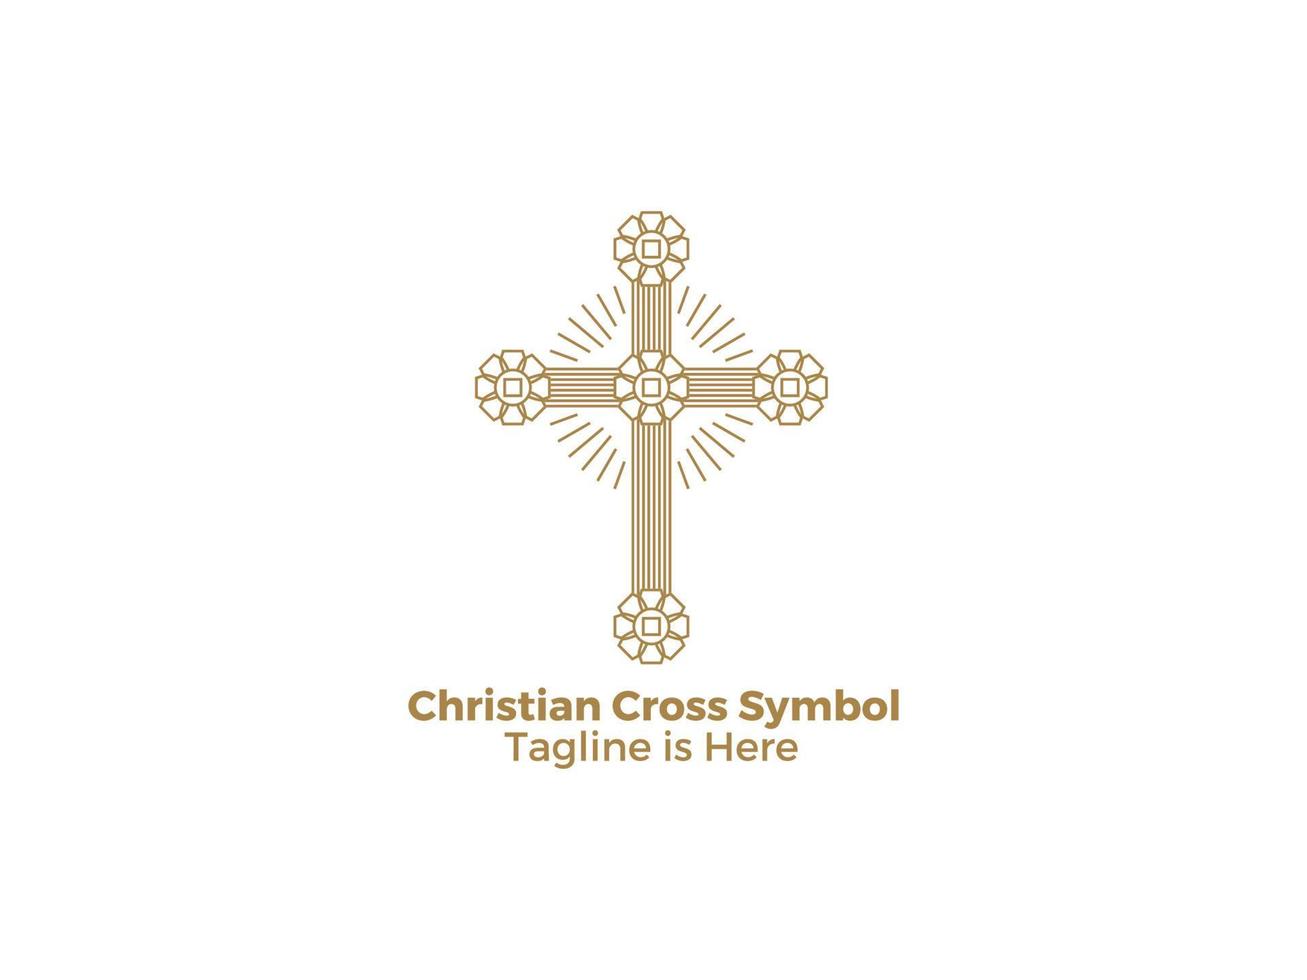 het kruis is een symbool van het katholieke christendom religie de kerk van jezus ontwerp icoon vector